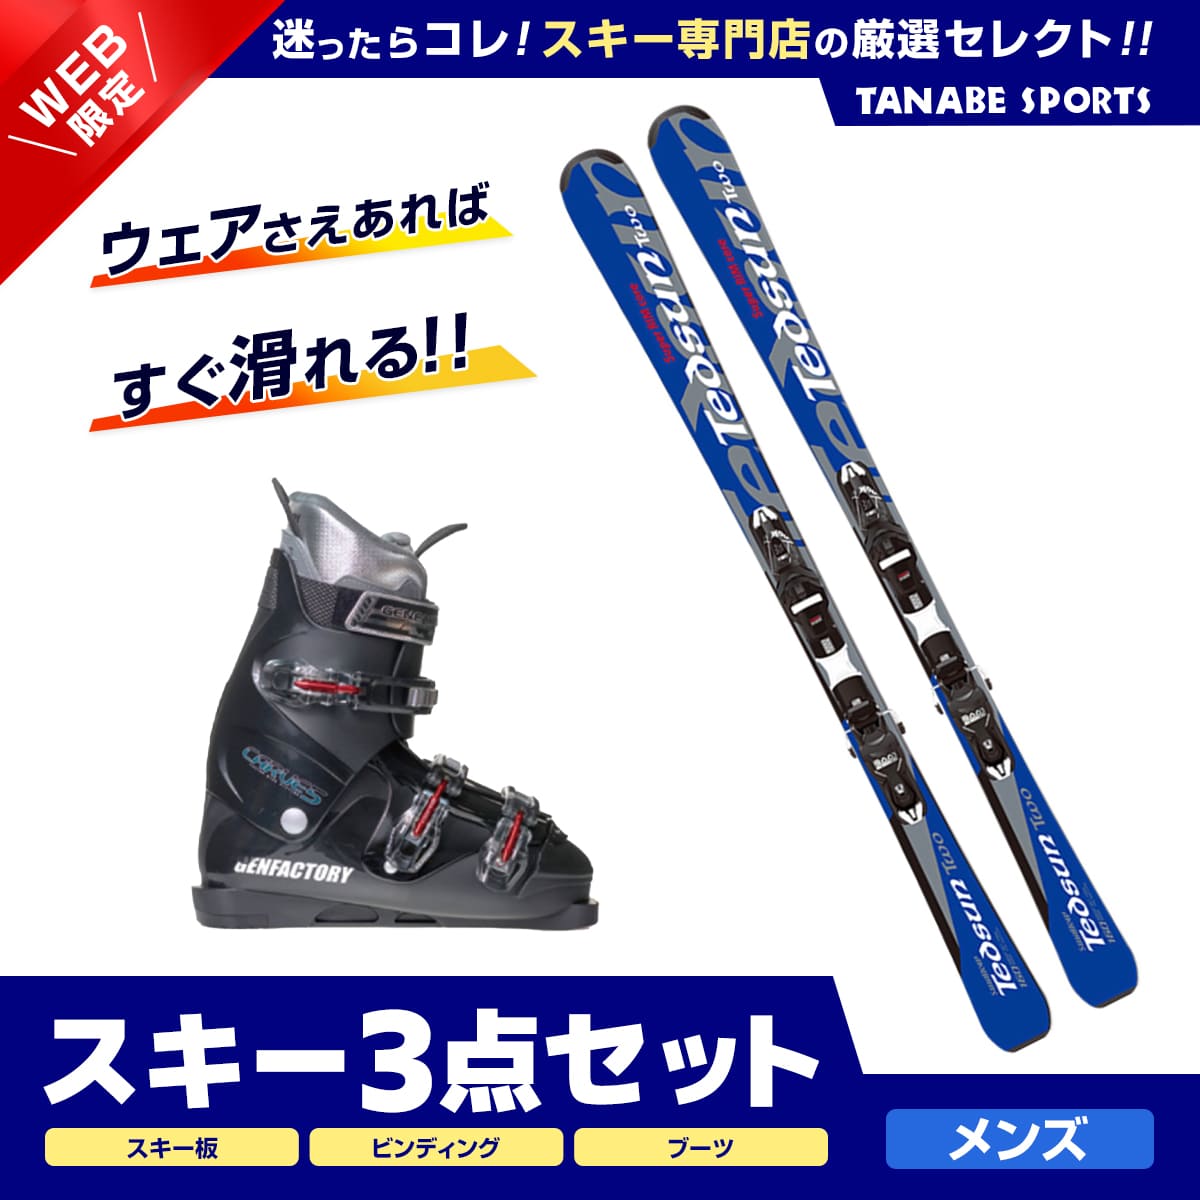 【楽天市場】P10倍&クーポン 11/1限定 スキー セット 3点 メンズ